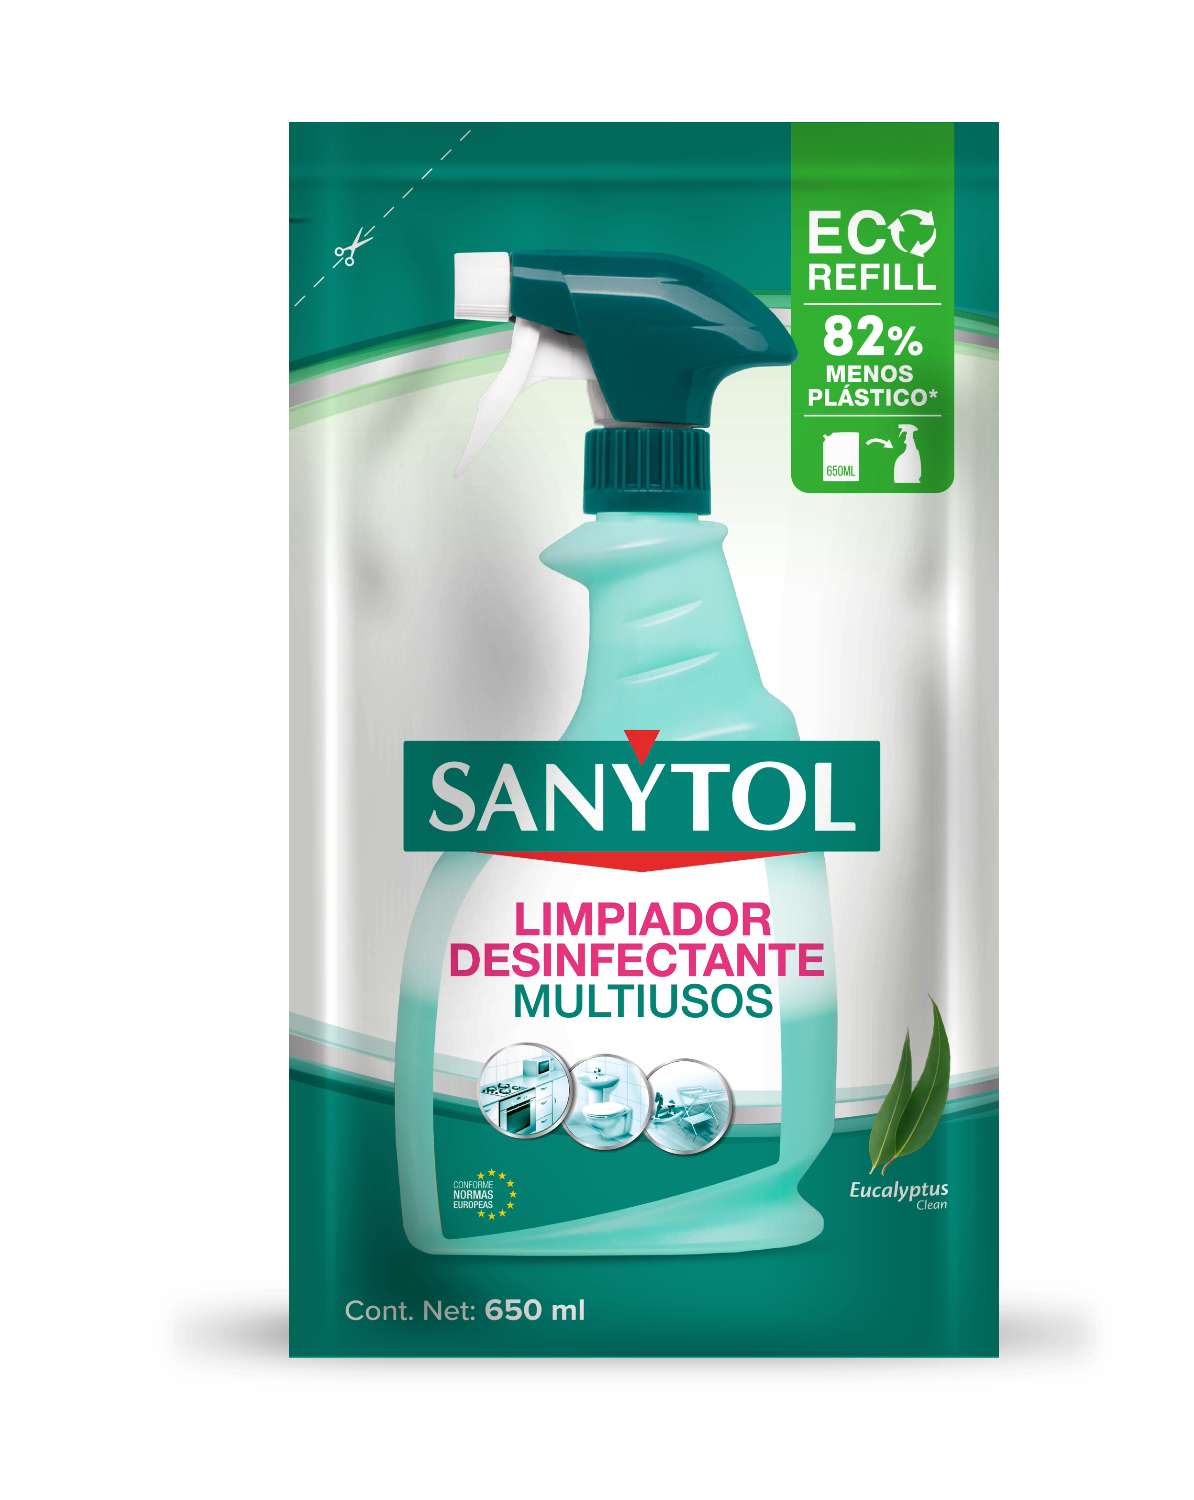 Eco refill Desinfectante multiusos - Eucalipto - Sanytol